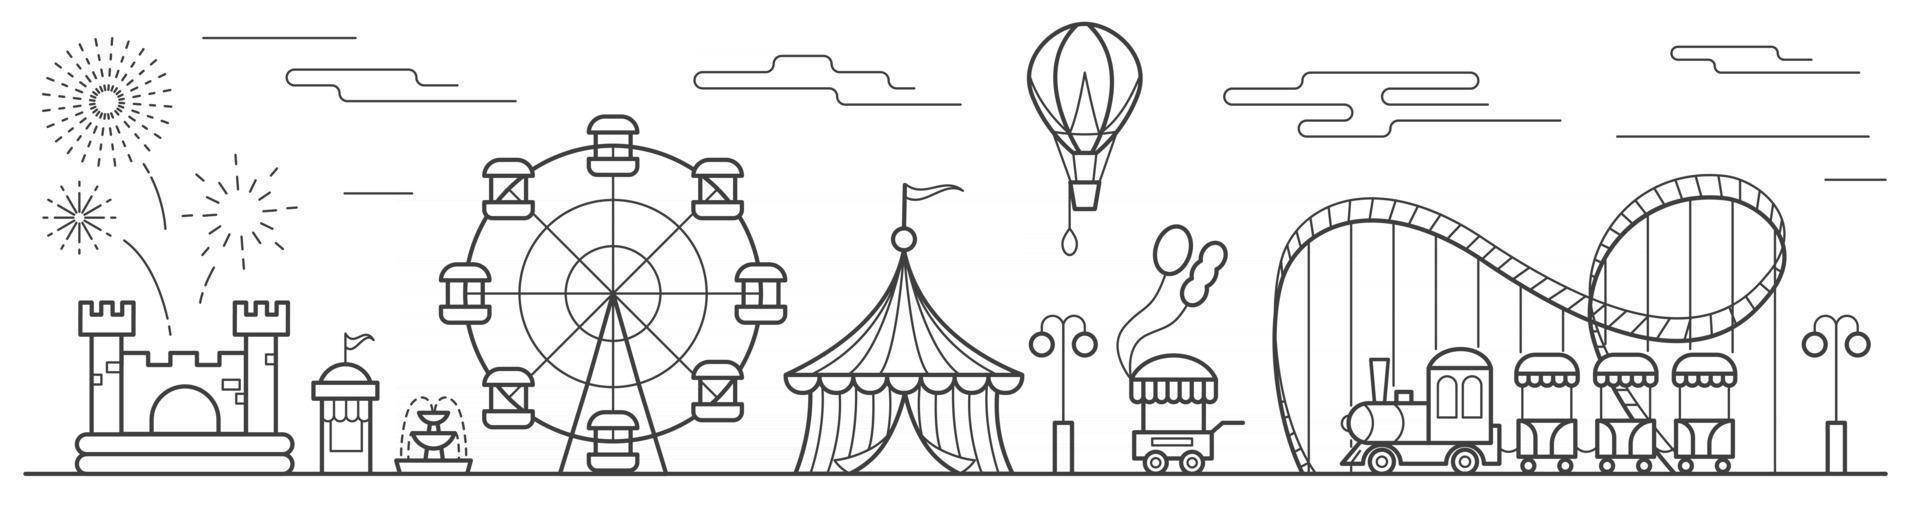 panorama de un parque de atracciones con noria, circo, atracciones, globo, castillo hinchable. paisaje del parque urbano. ilustración vectorial de contorno vector